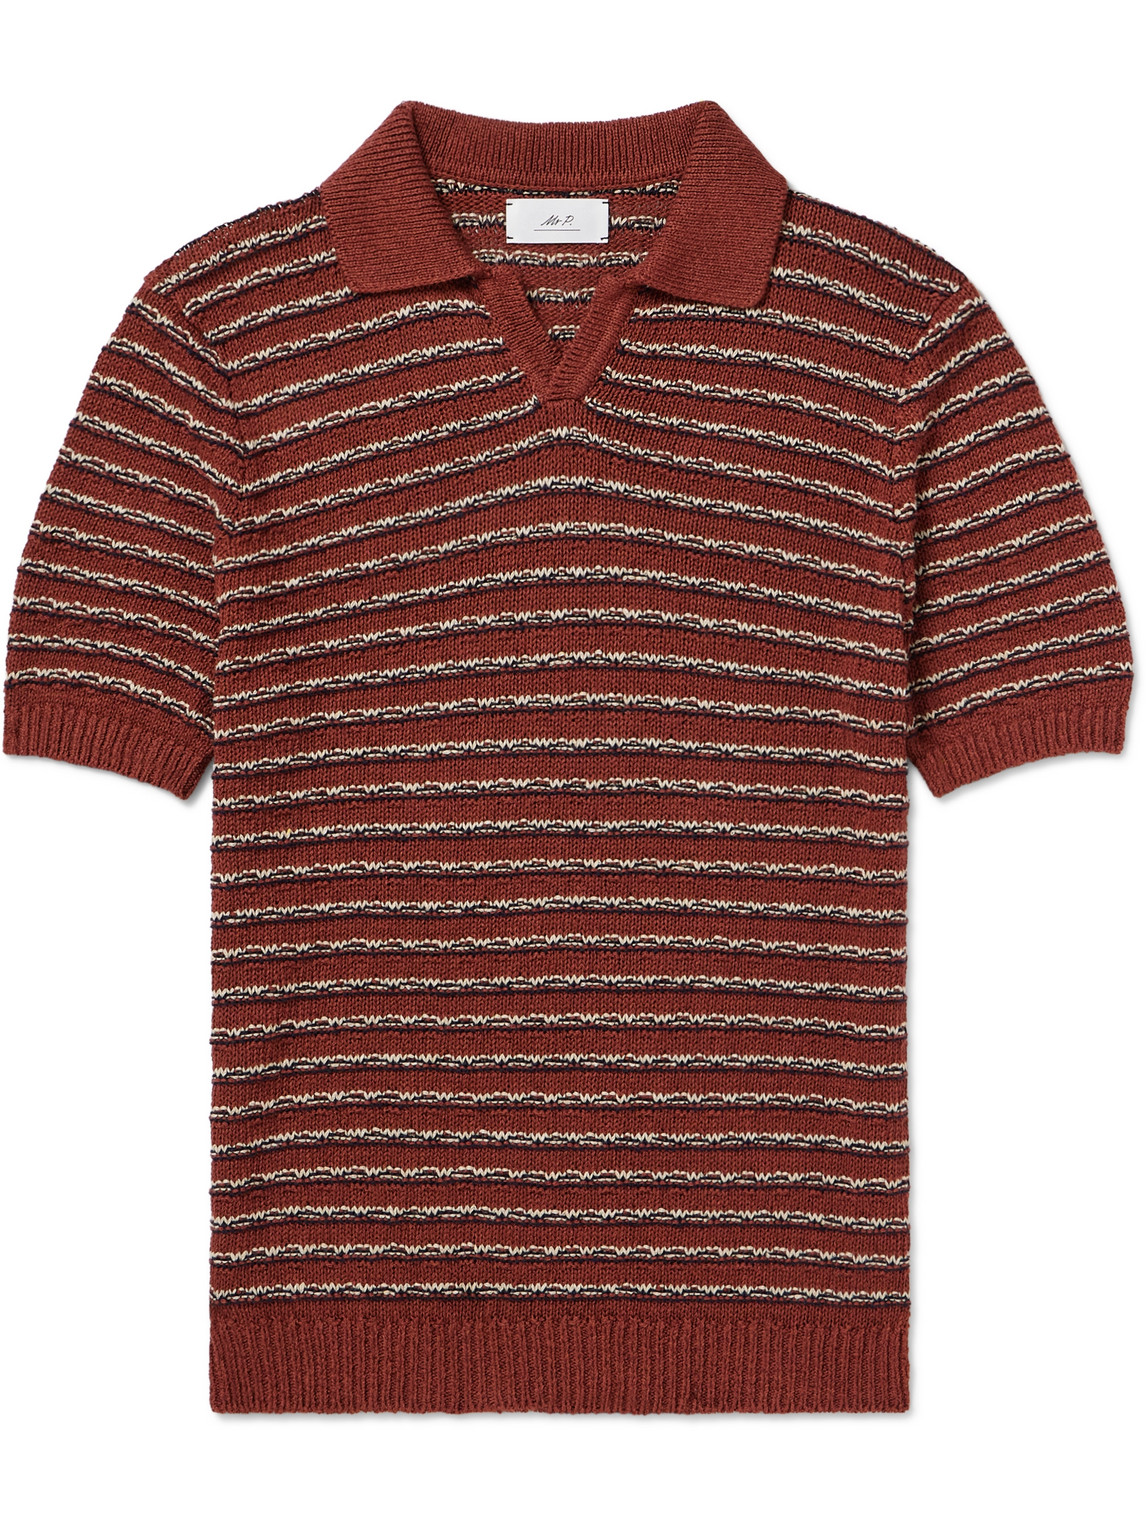 Mr P. - Textured Linen and Cotton-Blend Polo Shirt - Men - Red - M von Mr P.